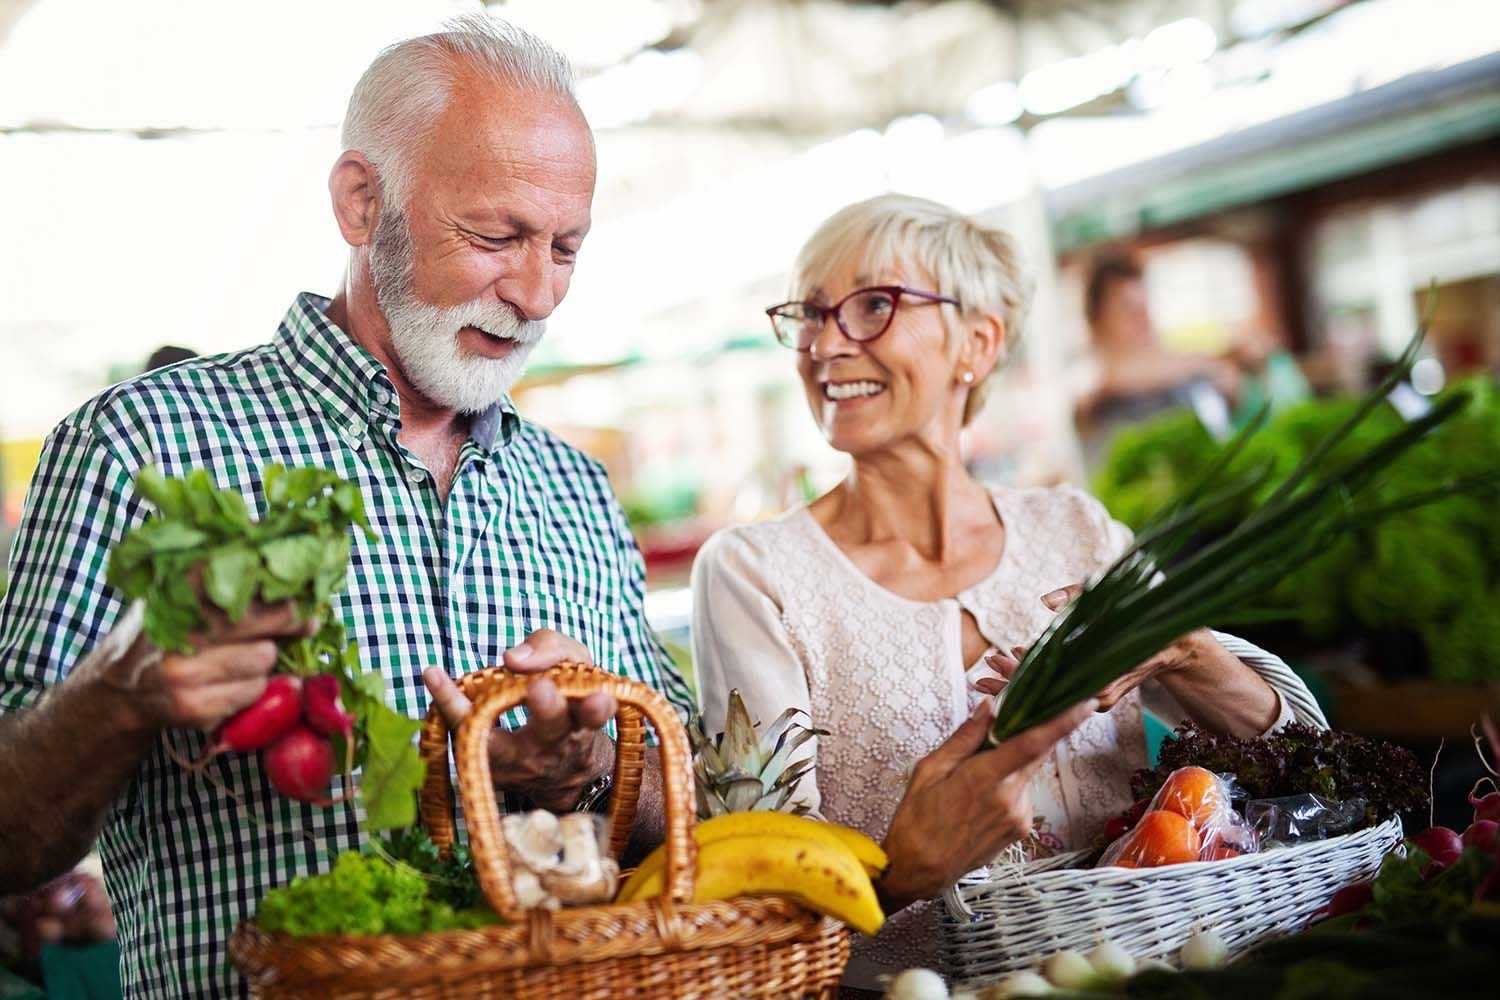 Auf dem Bild ist ein älteres Ehepaar zu sehen, das gerade Gemüse auf dem Markt kauft.